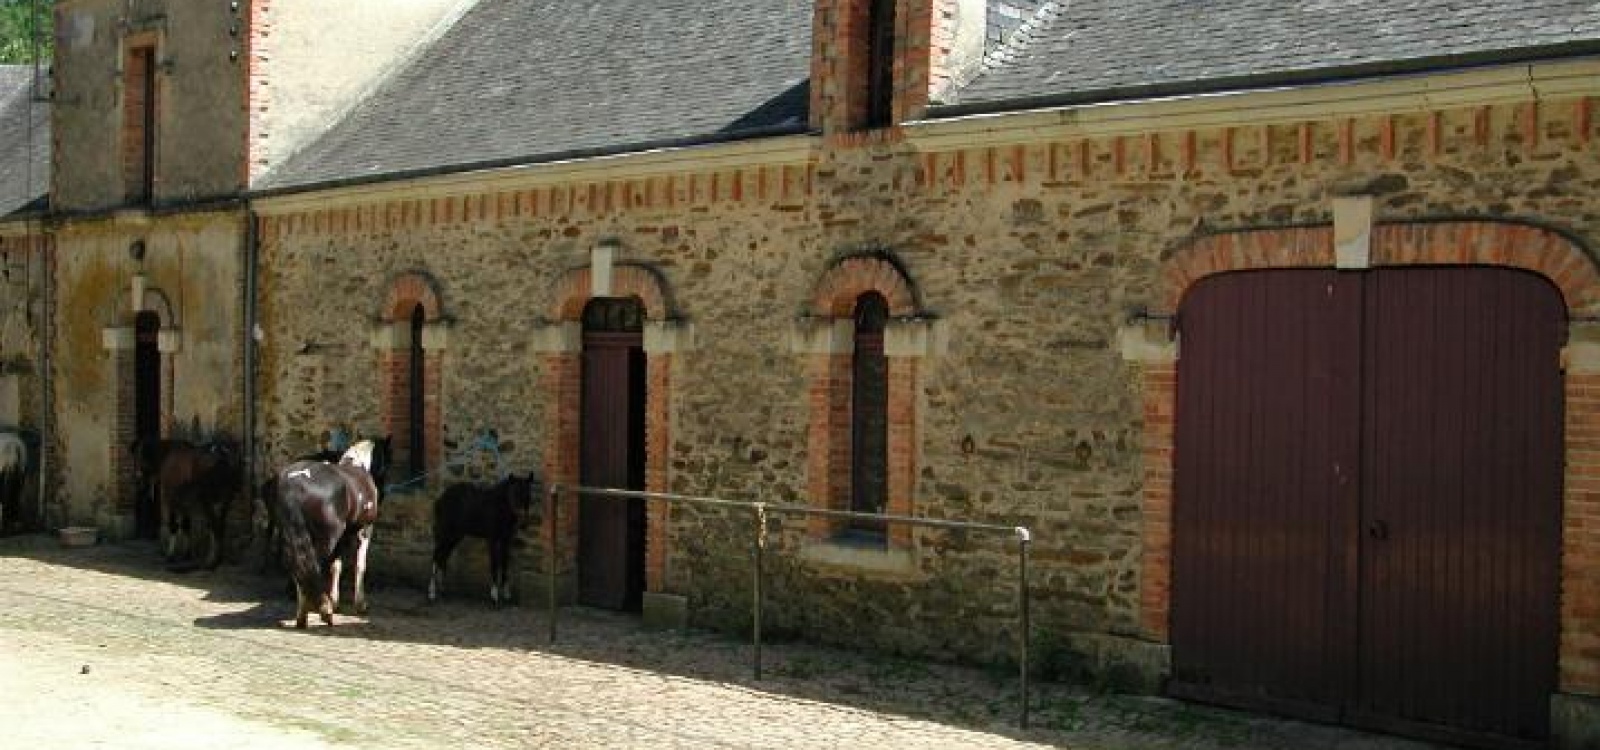 Angers,Maine et Loire,France,Château,1010